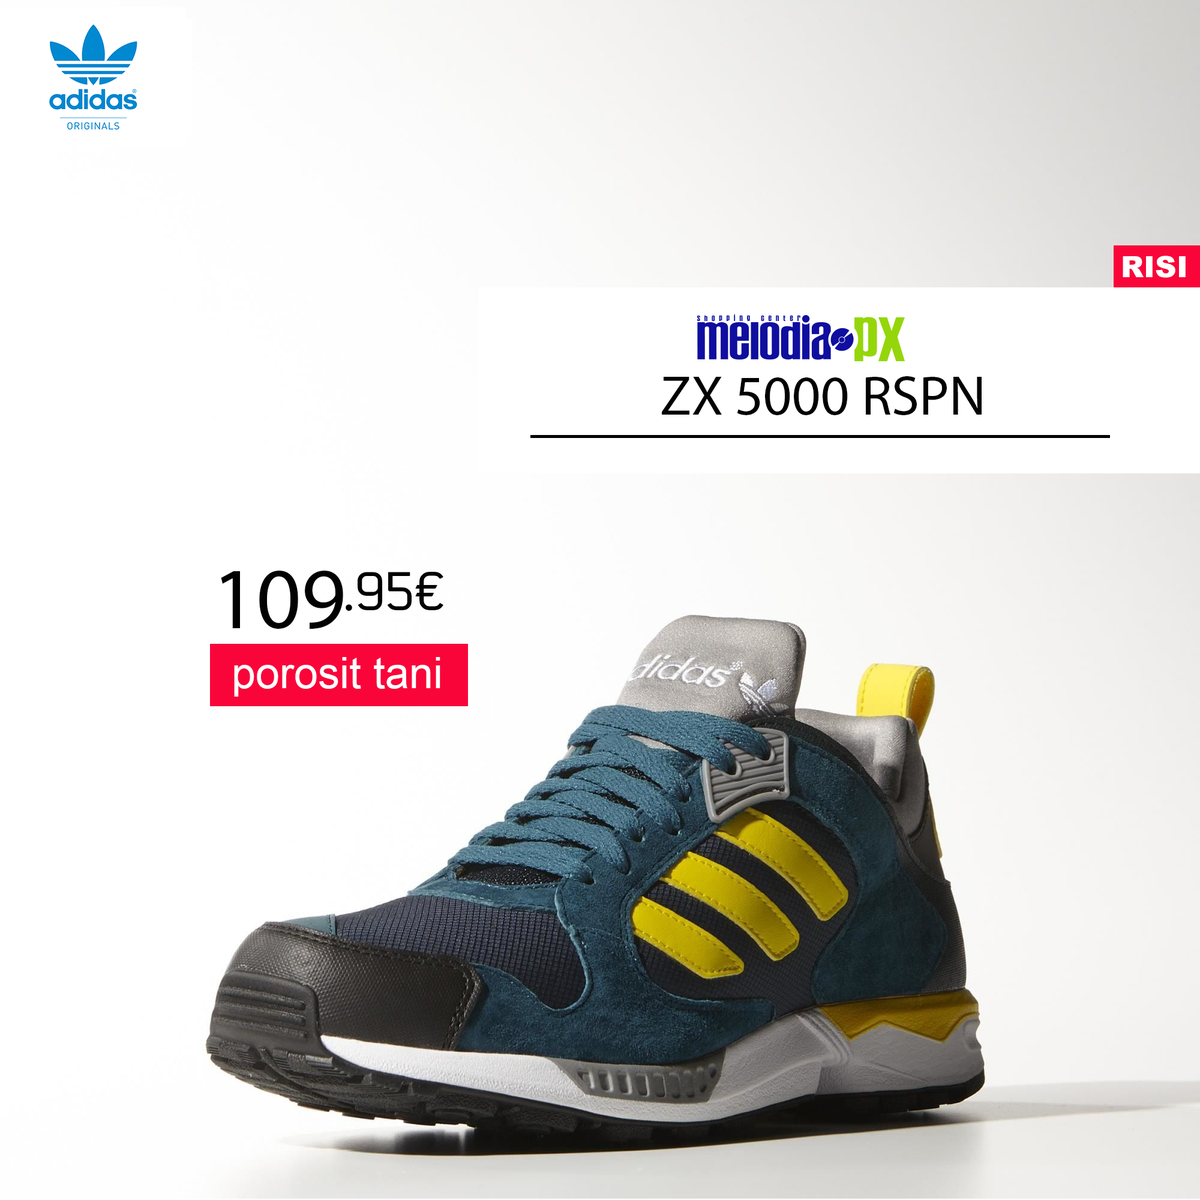 adidas zx 5000 2015